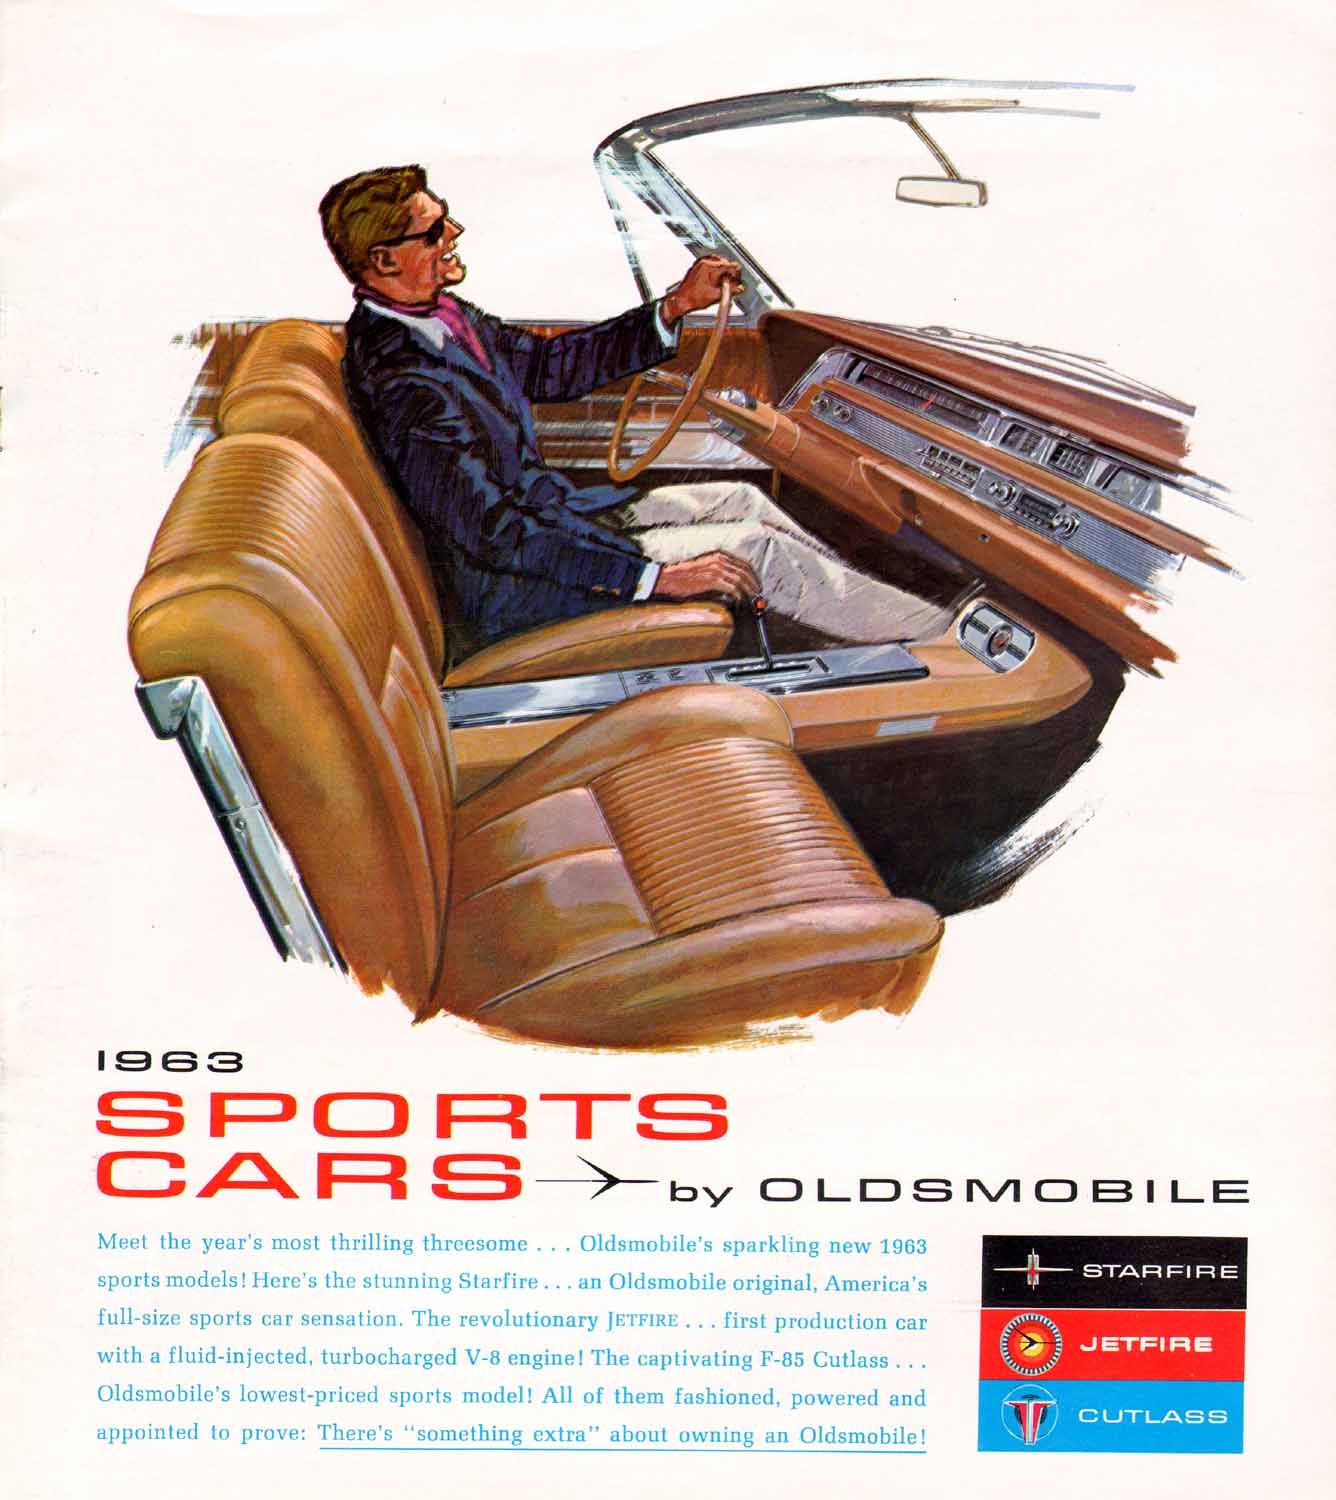 1963 Oldsmobile Sports Cars Brochure